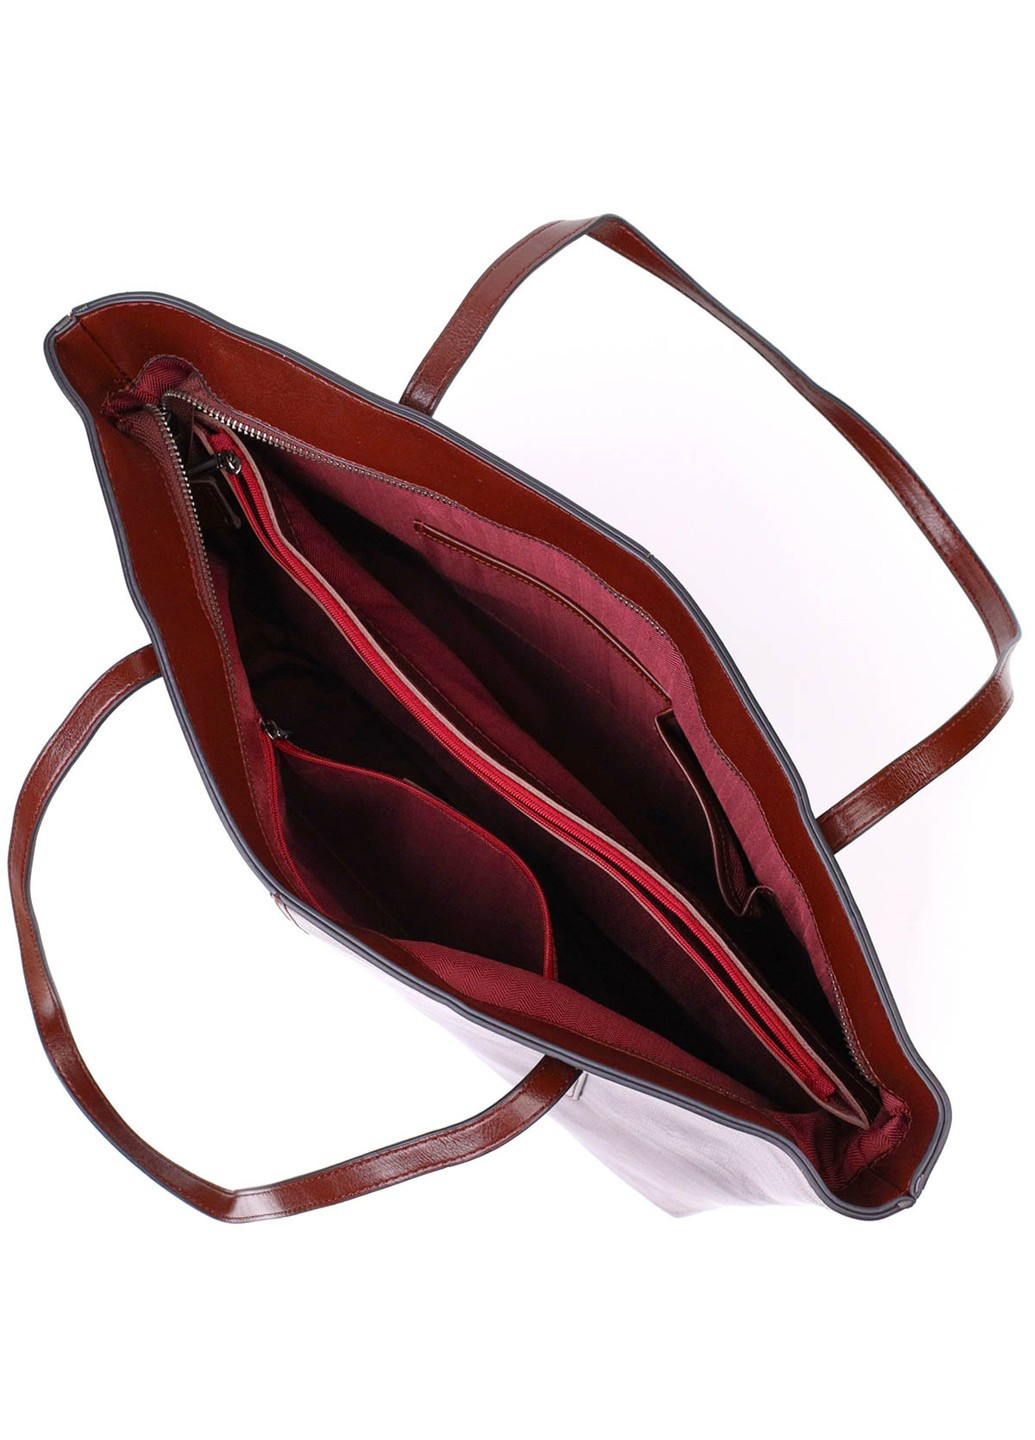 Практичная сумка шоппер из натуральной кожи 22103 Коричневая Vintage (260360831)